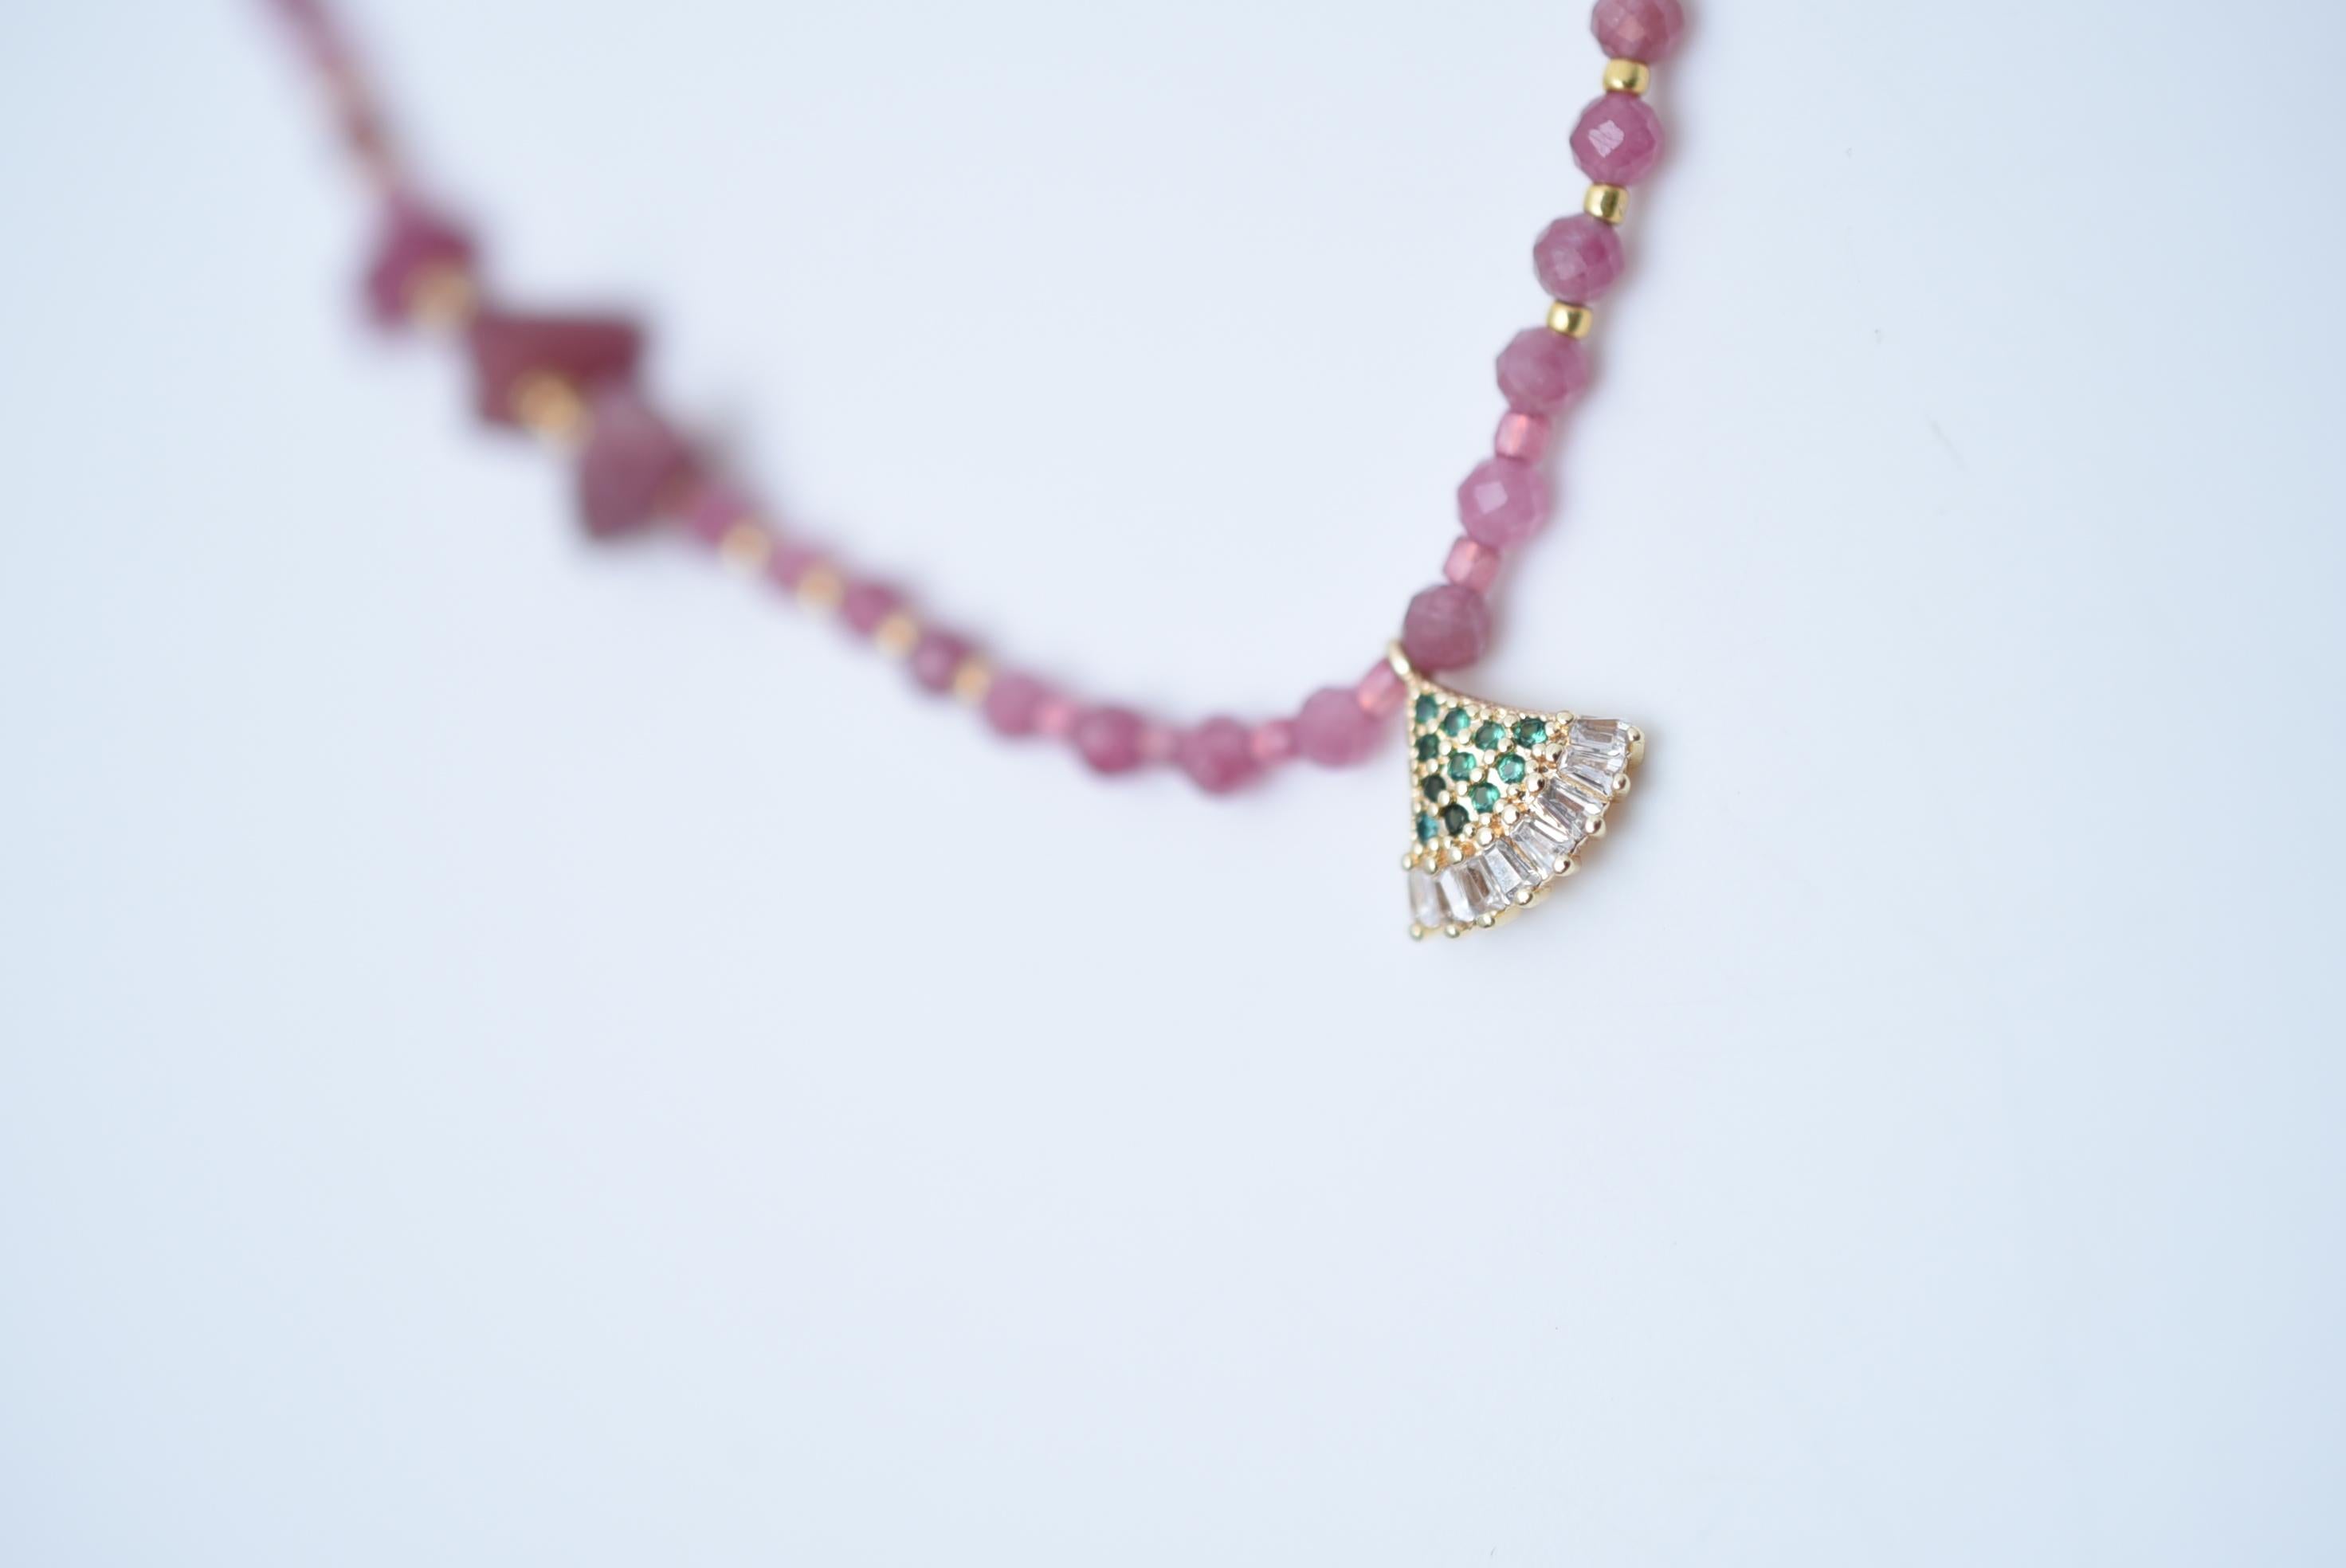 MATERIAL:Messing, rosa Turmalin, Glasperlen, Magnet
Größe: etwa 42 cm


Halskette mit viel rosa Turmalin.
Die rosafarbene Farbe lässt sich erstaunlich leicht mit der Haut verschmelzen und kann auch von Personen, die normalerweise nicht viel Farbe